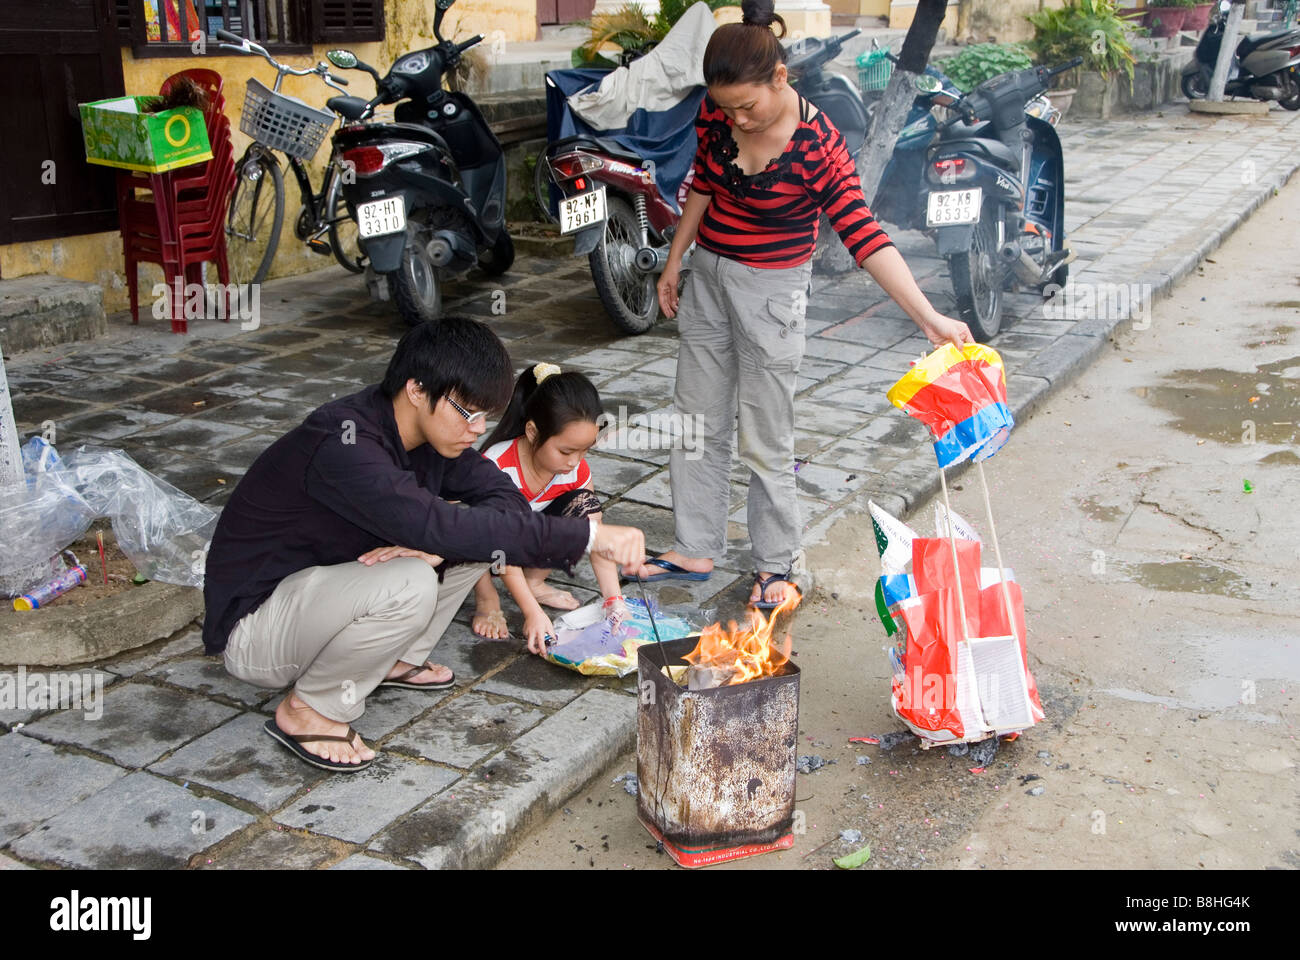 Family burning offerings during Tet festival, Hoi An, Vietnam Stock Photo